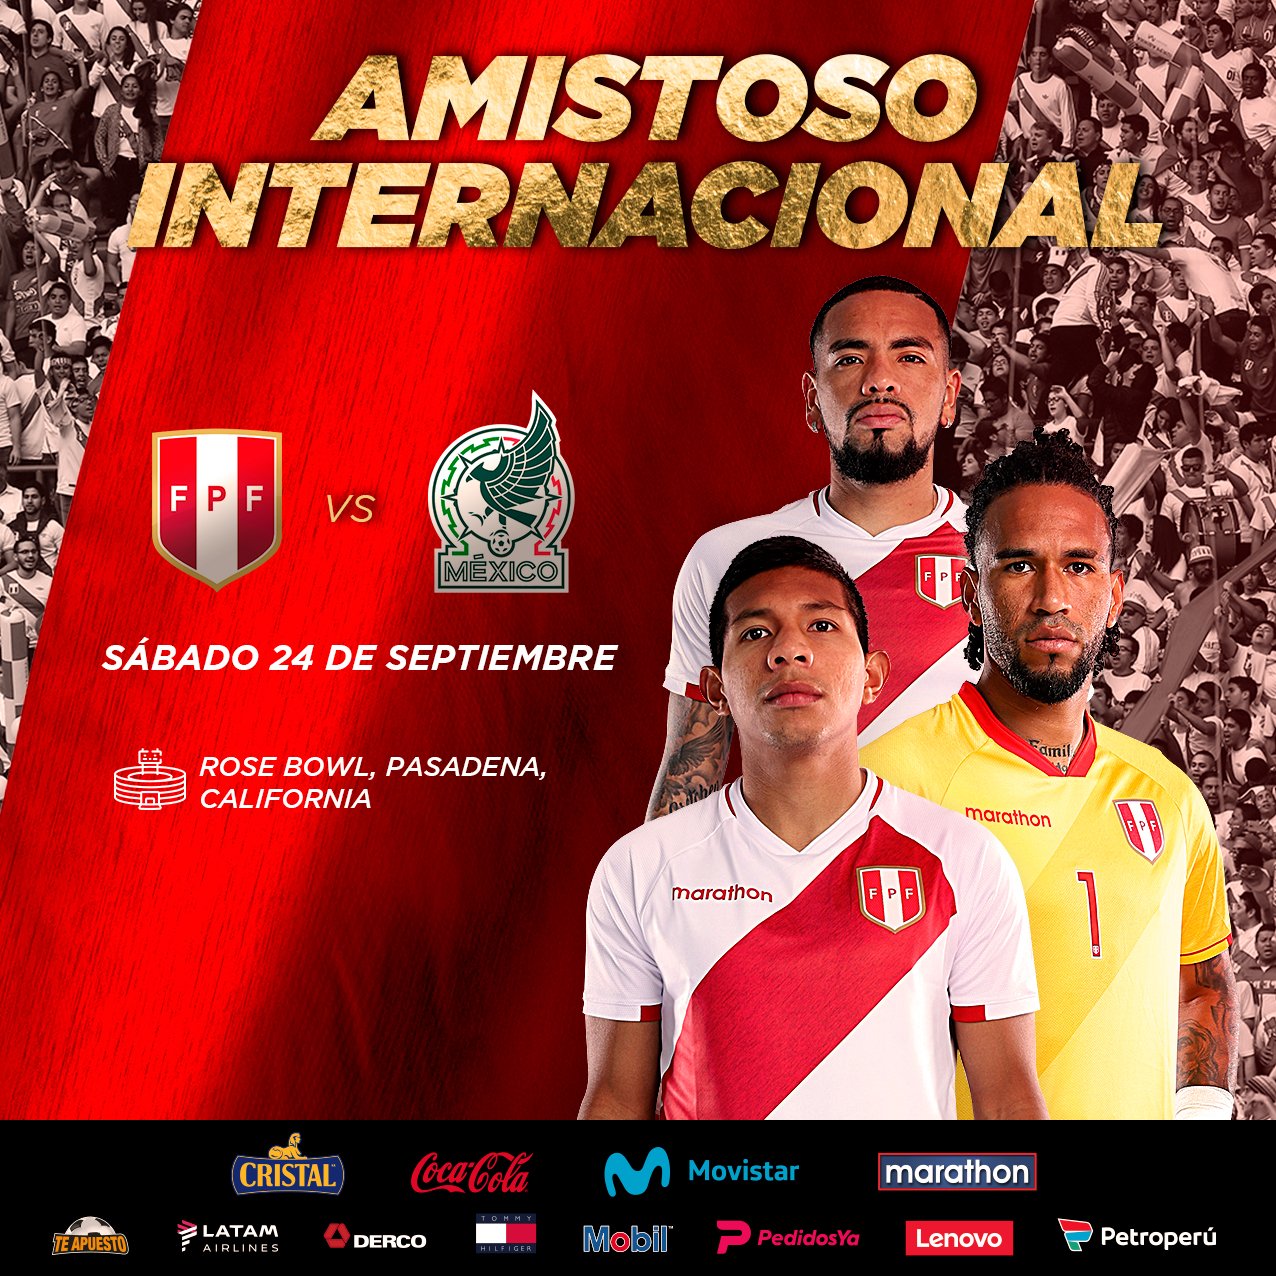 La selección peruana confirmó estadio y fecha del amistoso ante México.